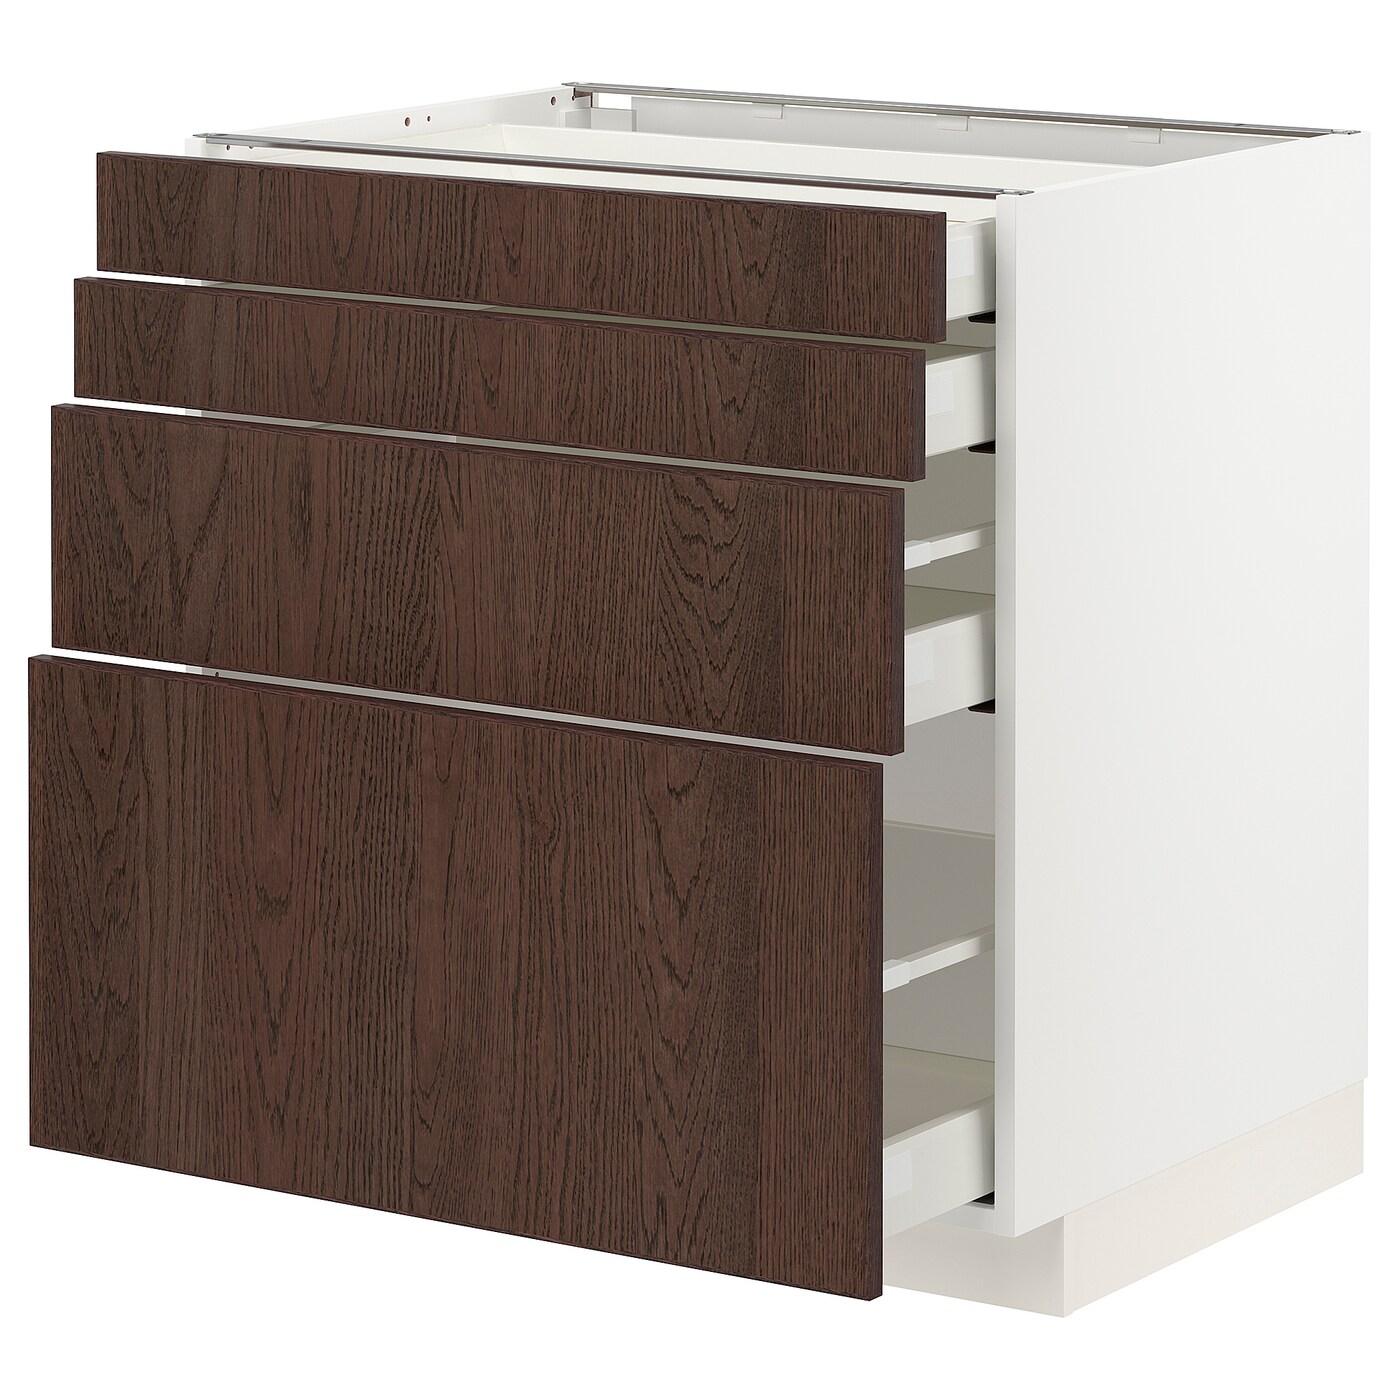 Напольный кухонный шкаф  - IKEA METOD MAXIMERA, 88x62x80см, белый/темно-коричневый, МЕТОД МАКСИМЕРА ИКЕА